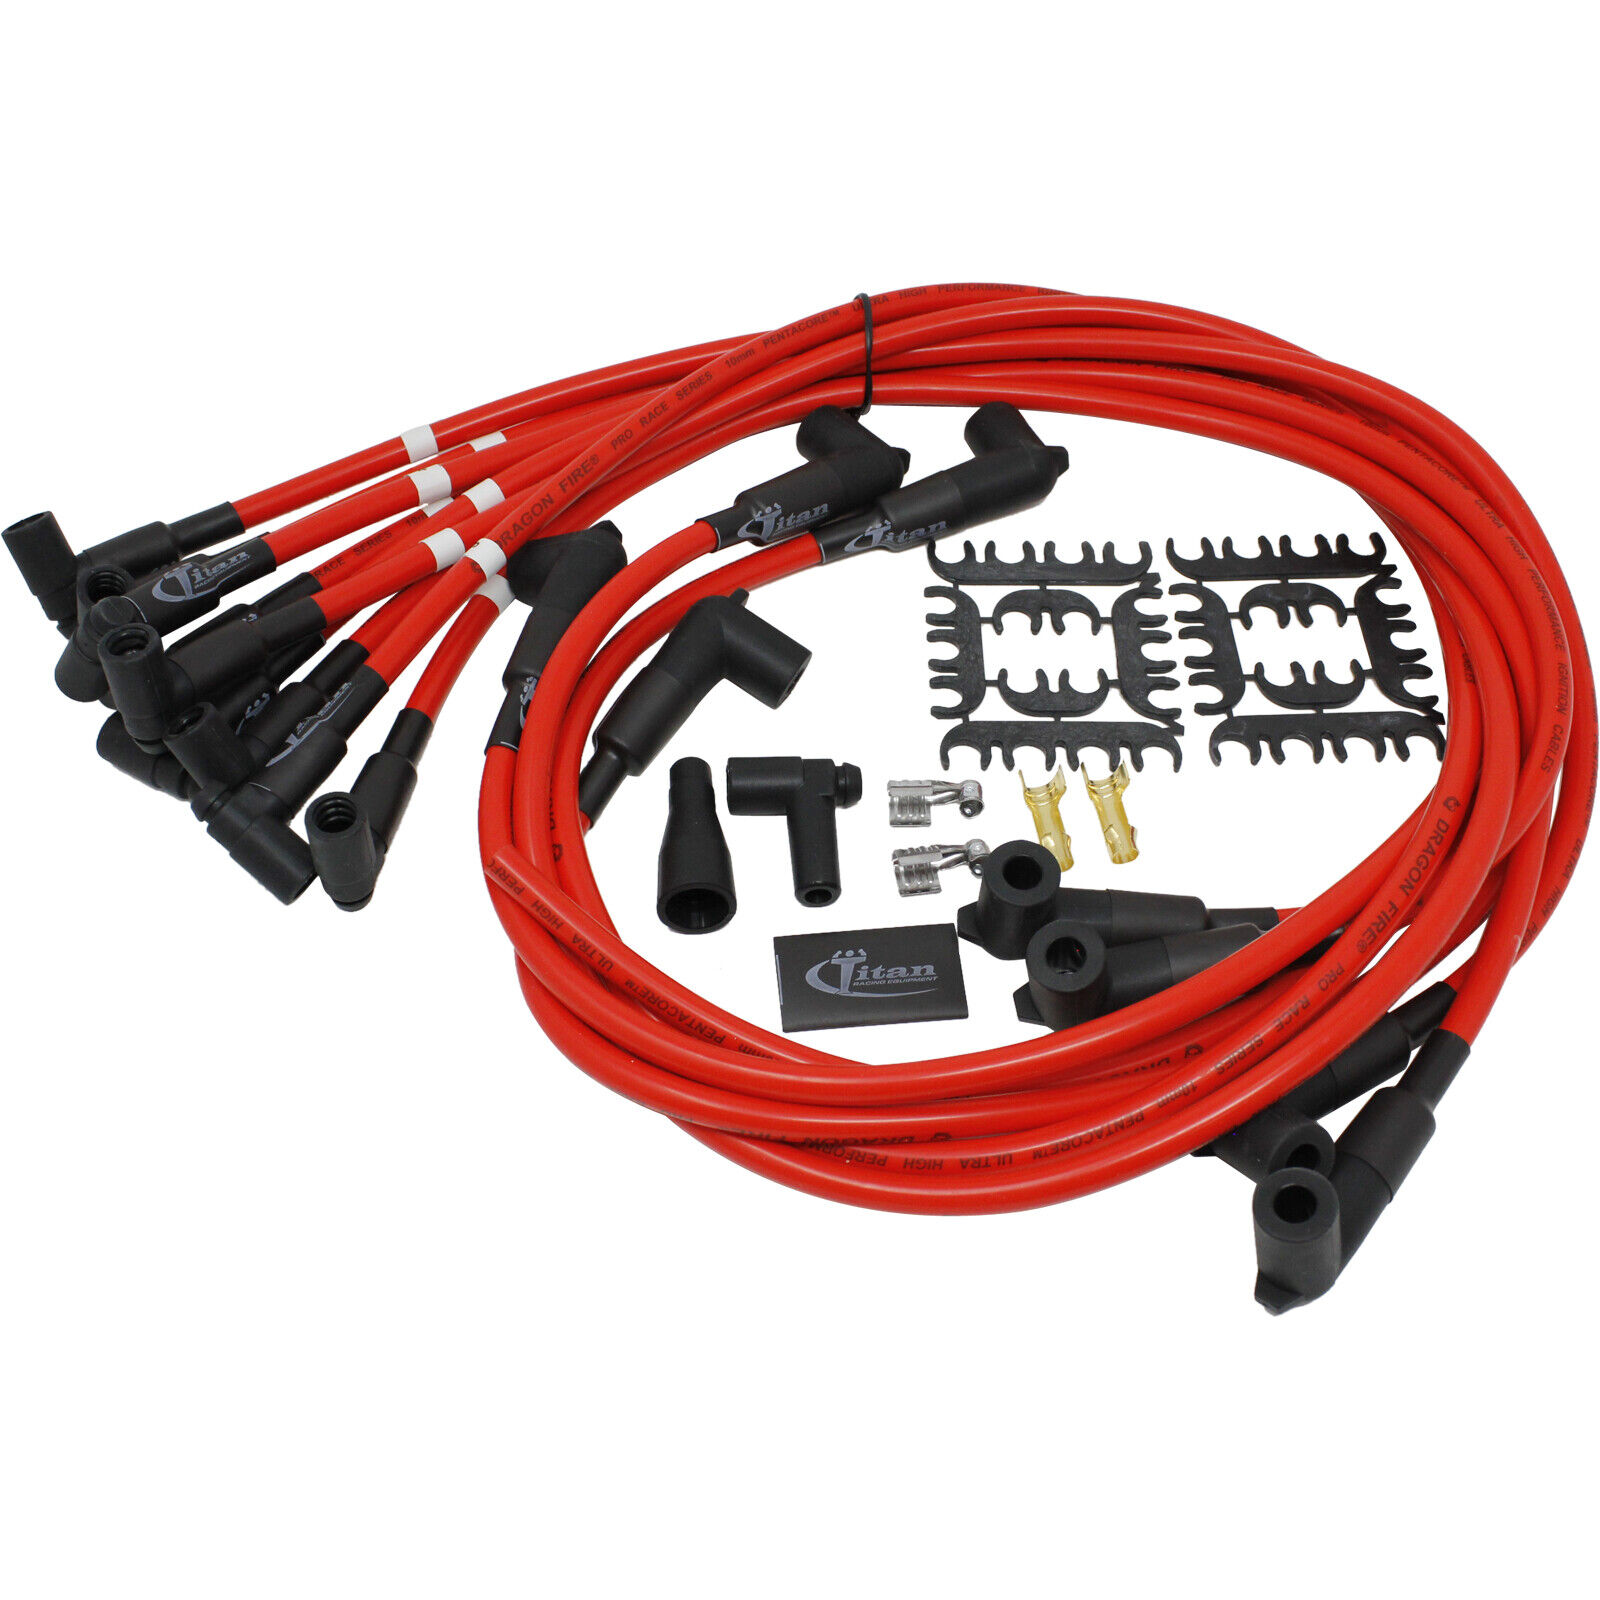 Titan - SB Chevy Direct Fit Spark Plug Wires - Premium 10mm - Under Header